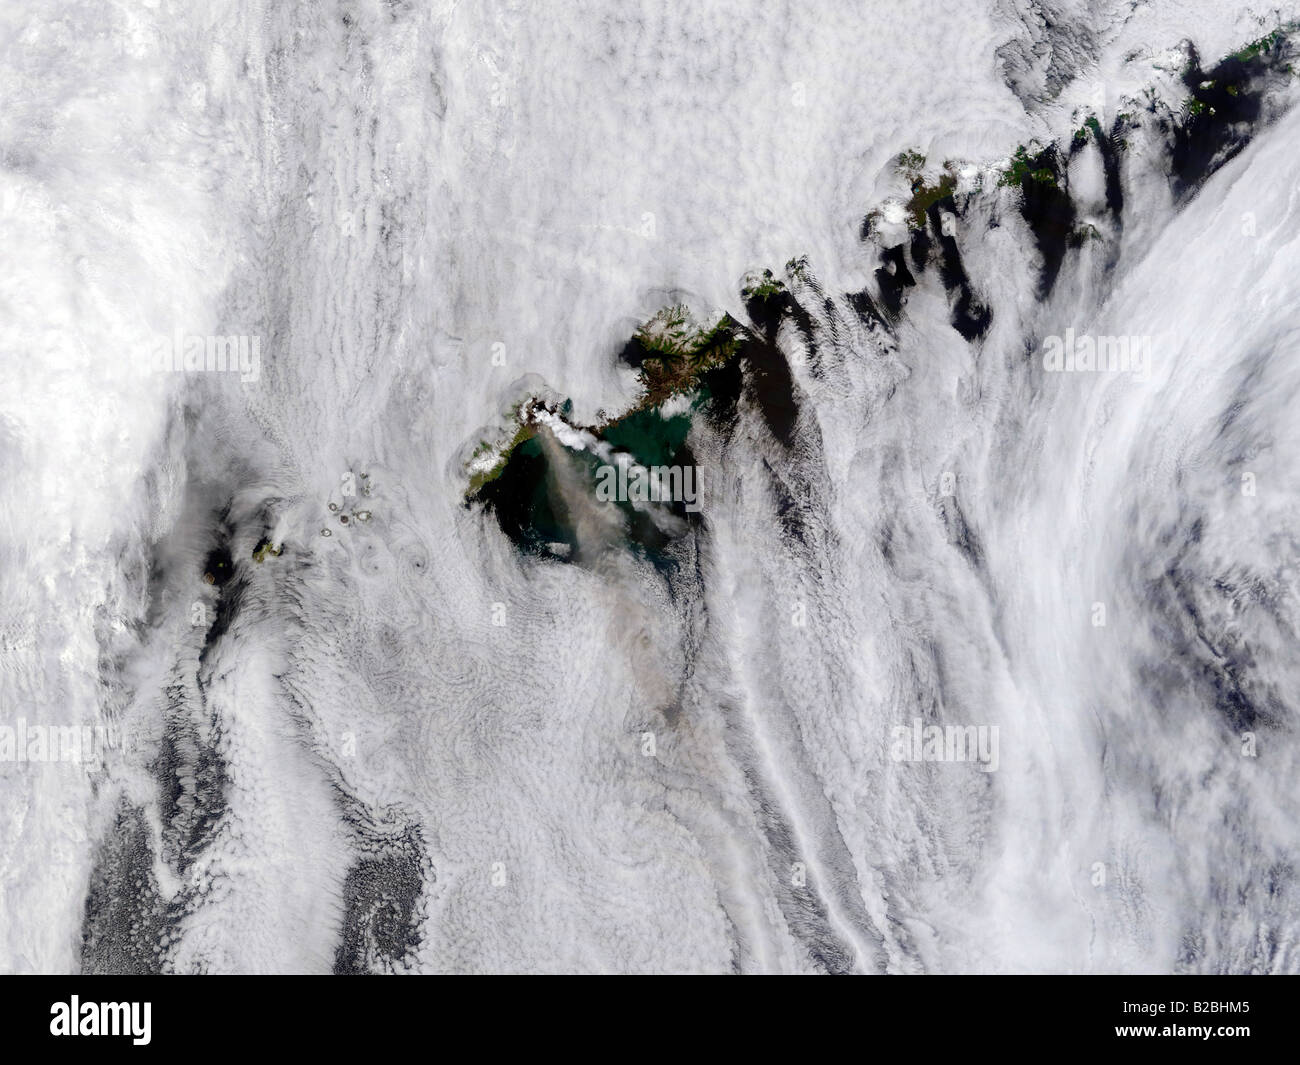 Plumes from Okmok Volcano, Aleutian Islands  July 13, 2008 at 22:30 UTC. Stock Photo